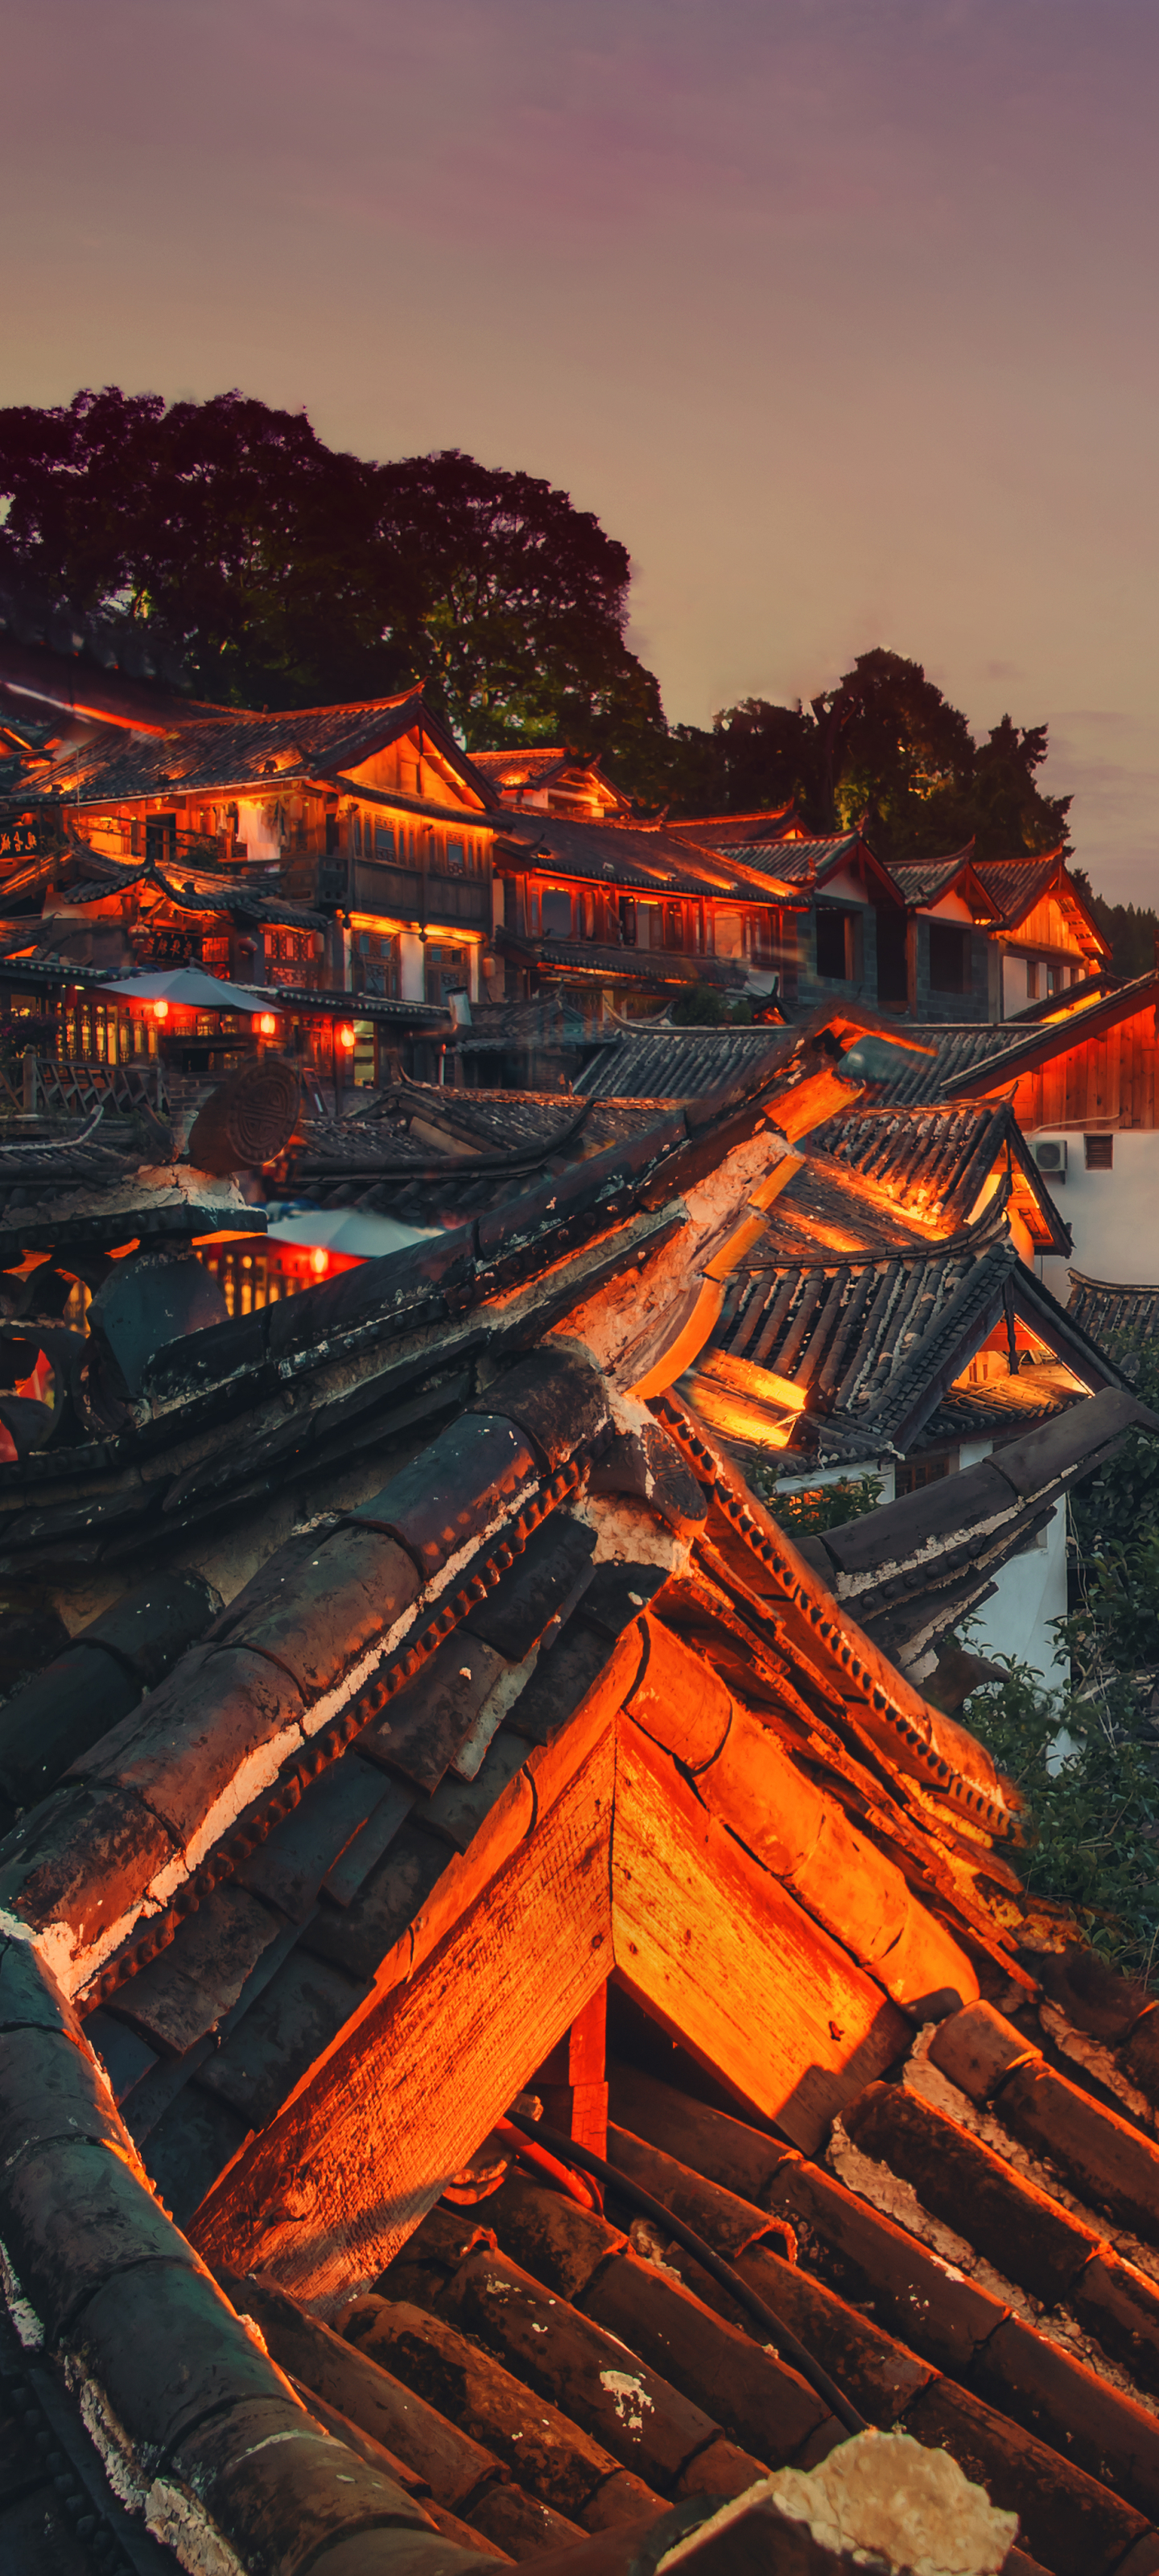 man made, lijiang, china, yunnan, roof, night, village, cities